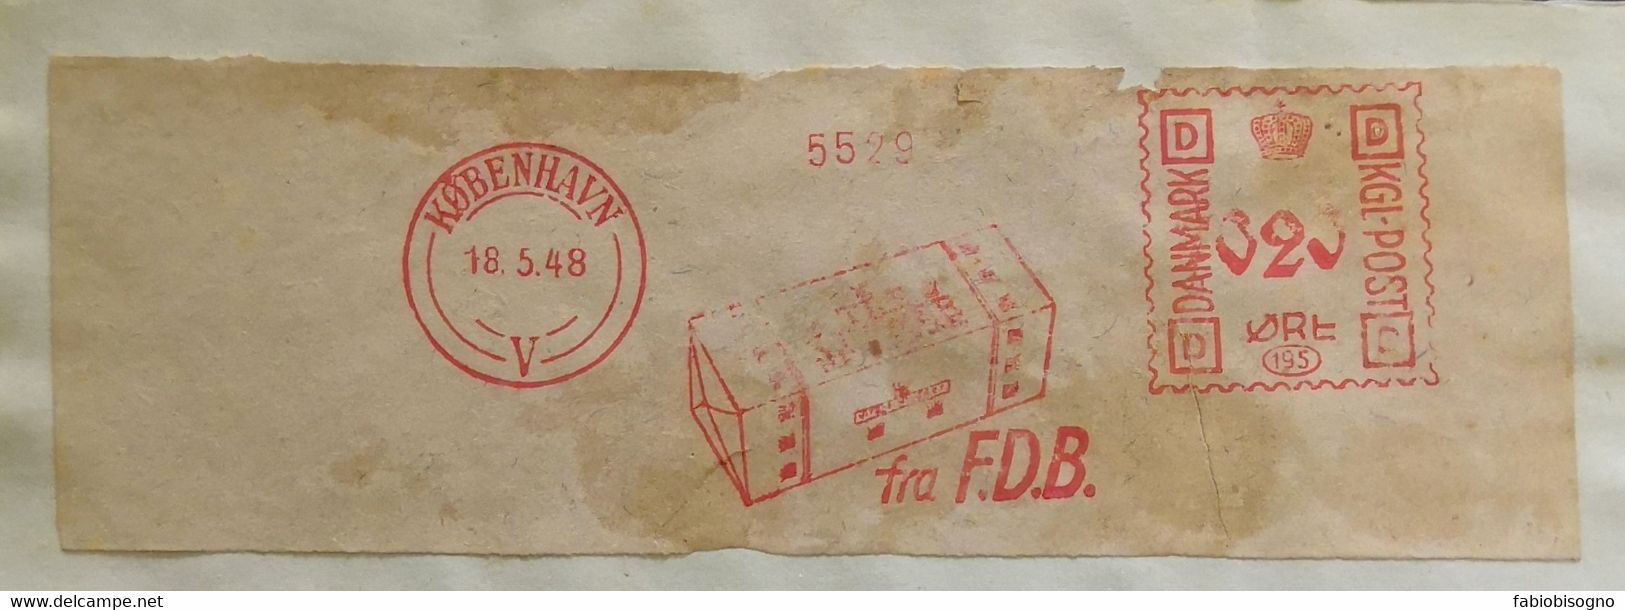 Danmark 1948 - Fra F.D.B. - EMA Meter Freistempel Fragment - Maschinenstempel (EMA)